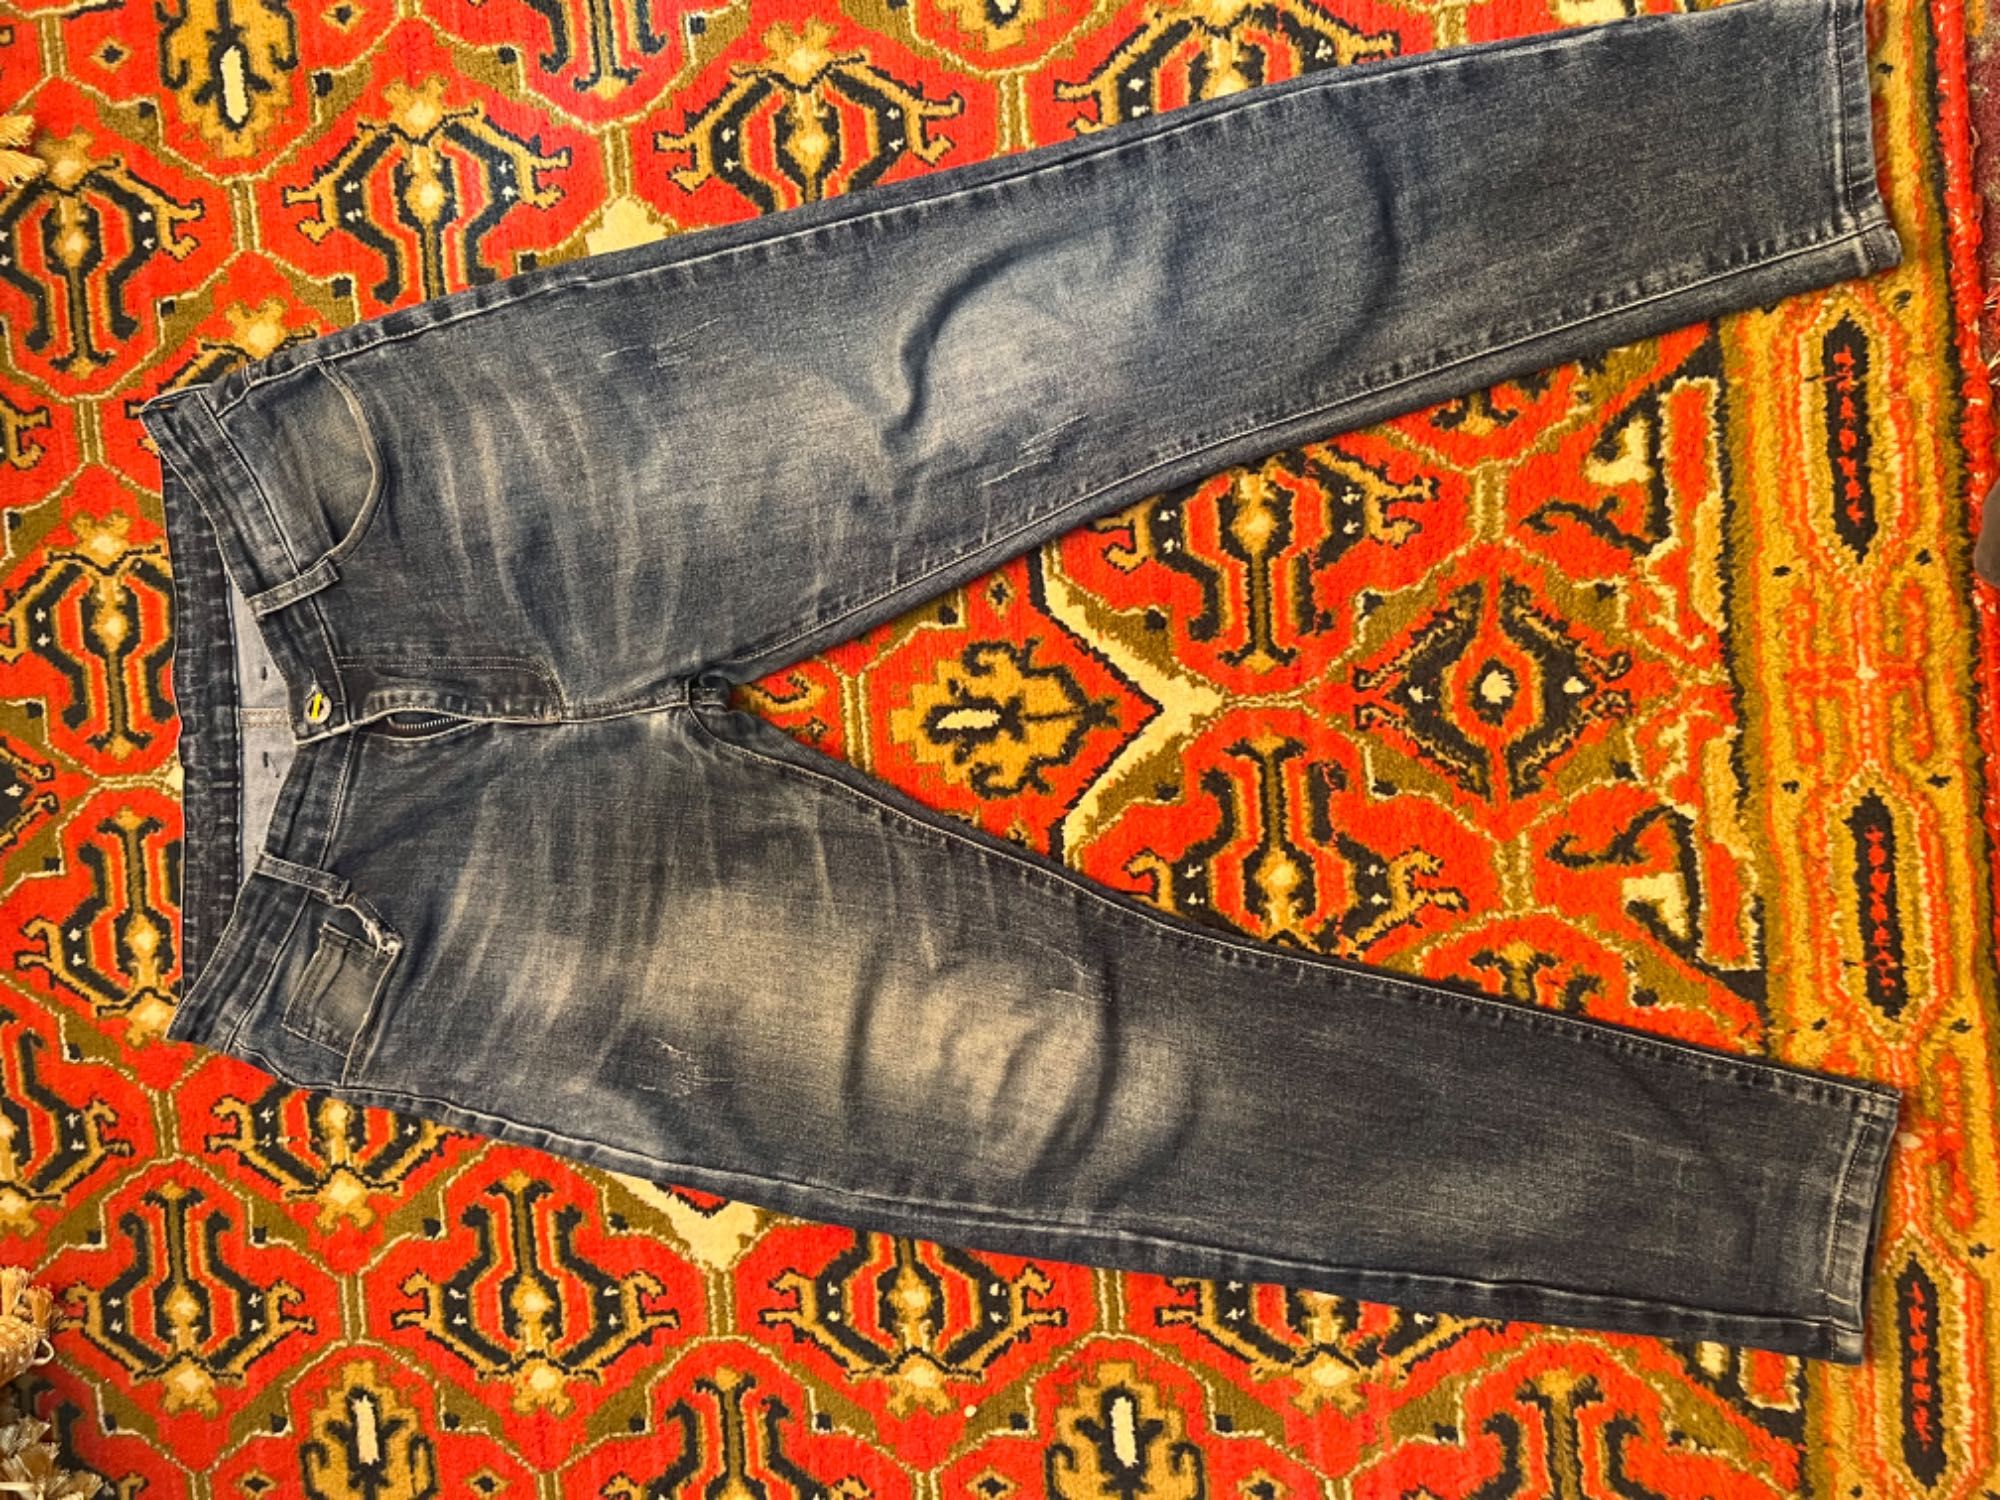 Мужские джинсы фирменные для работы, размер 29-30. Цена за все